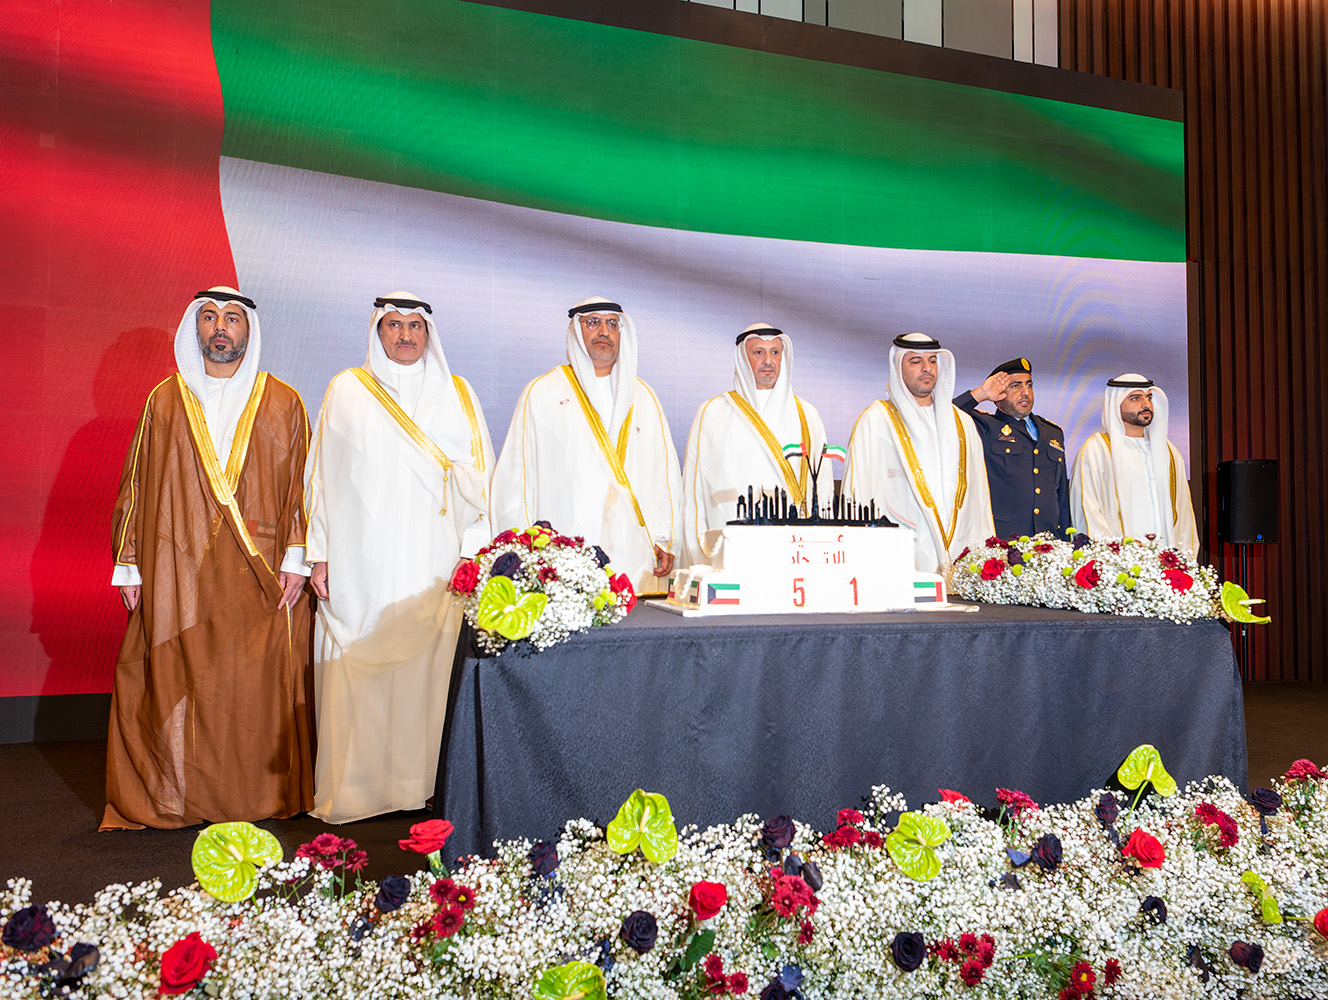 السفير الإماراتي: علاقاتنا مع الكويت نموذج استثنائي للتكاتف والتعاون على الأصعدة كافة